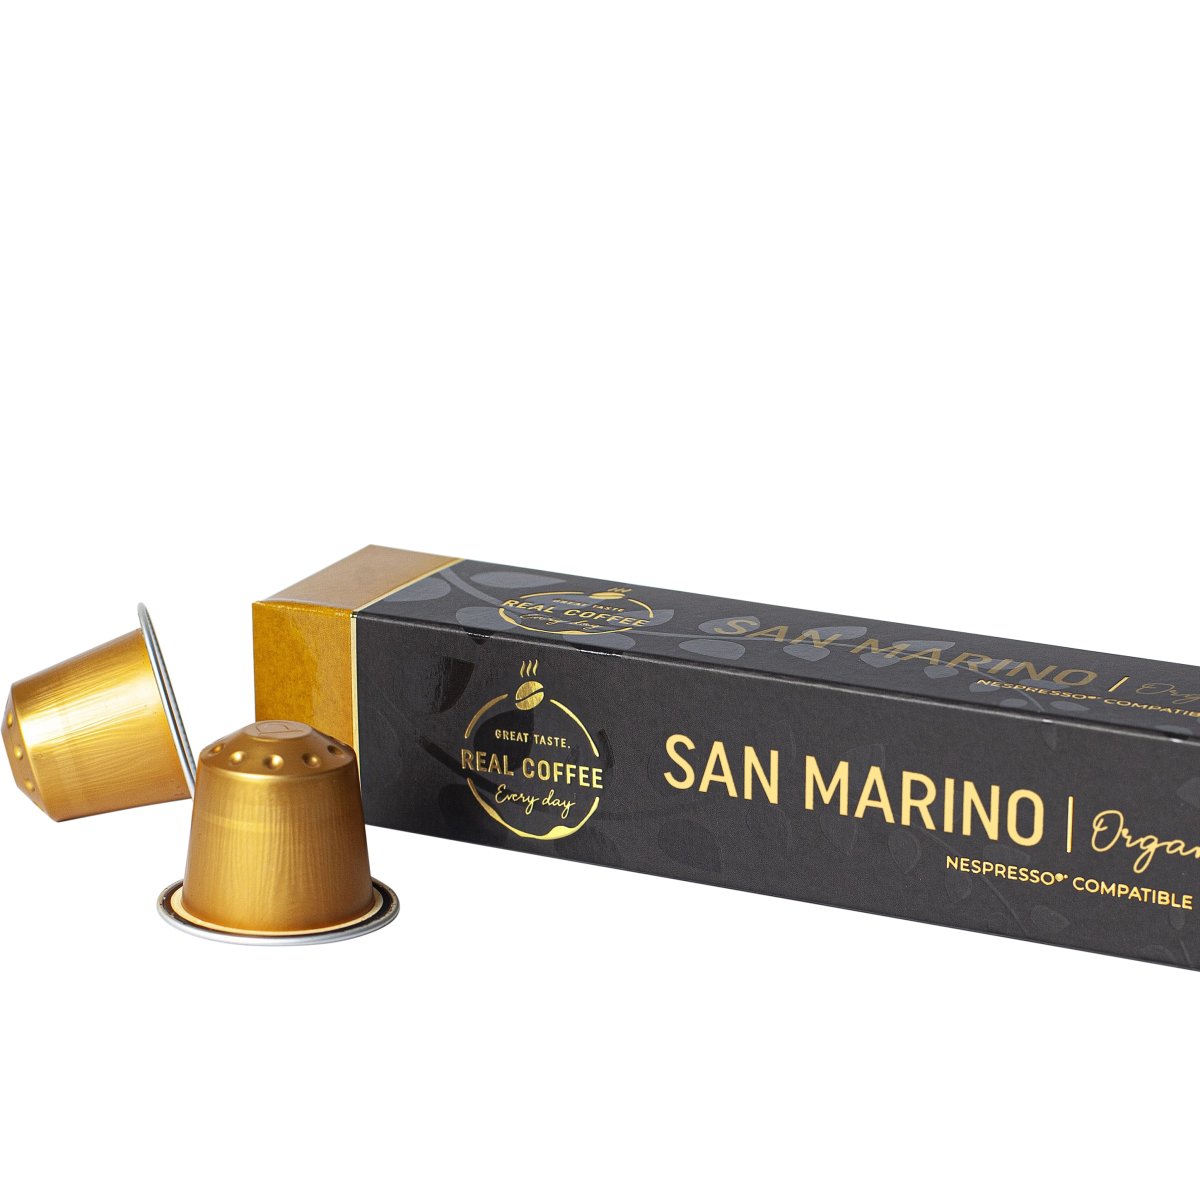 Real Kaffekapsel Lungo Marino, 10 stk. | Lomax A/S